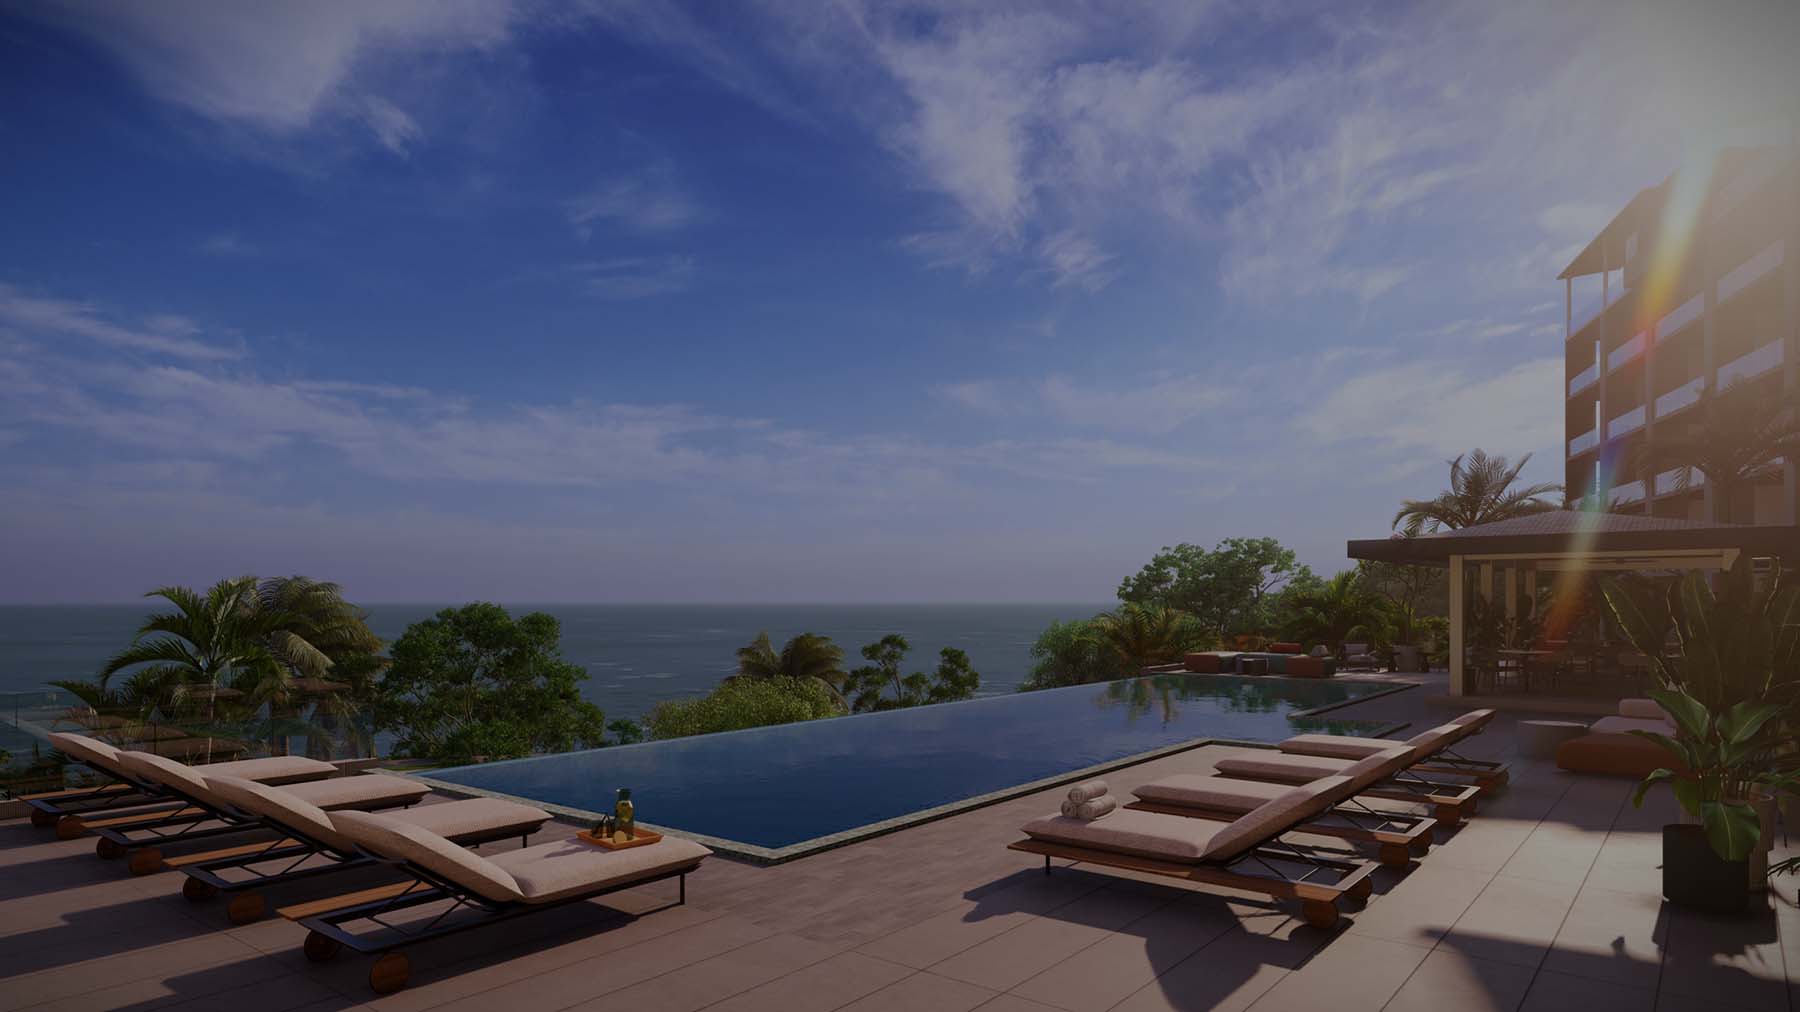 Vista Azul Costa Rica - Condominium Rendering - Exterior w:Pool